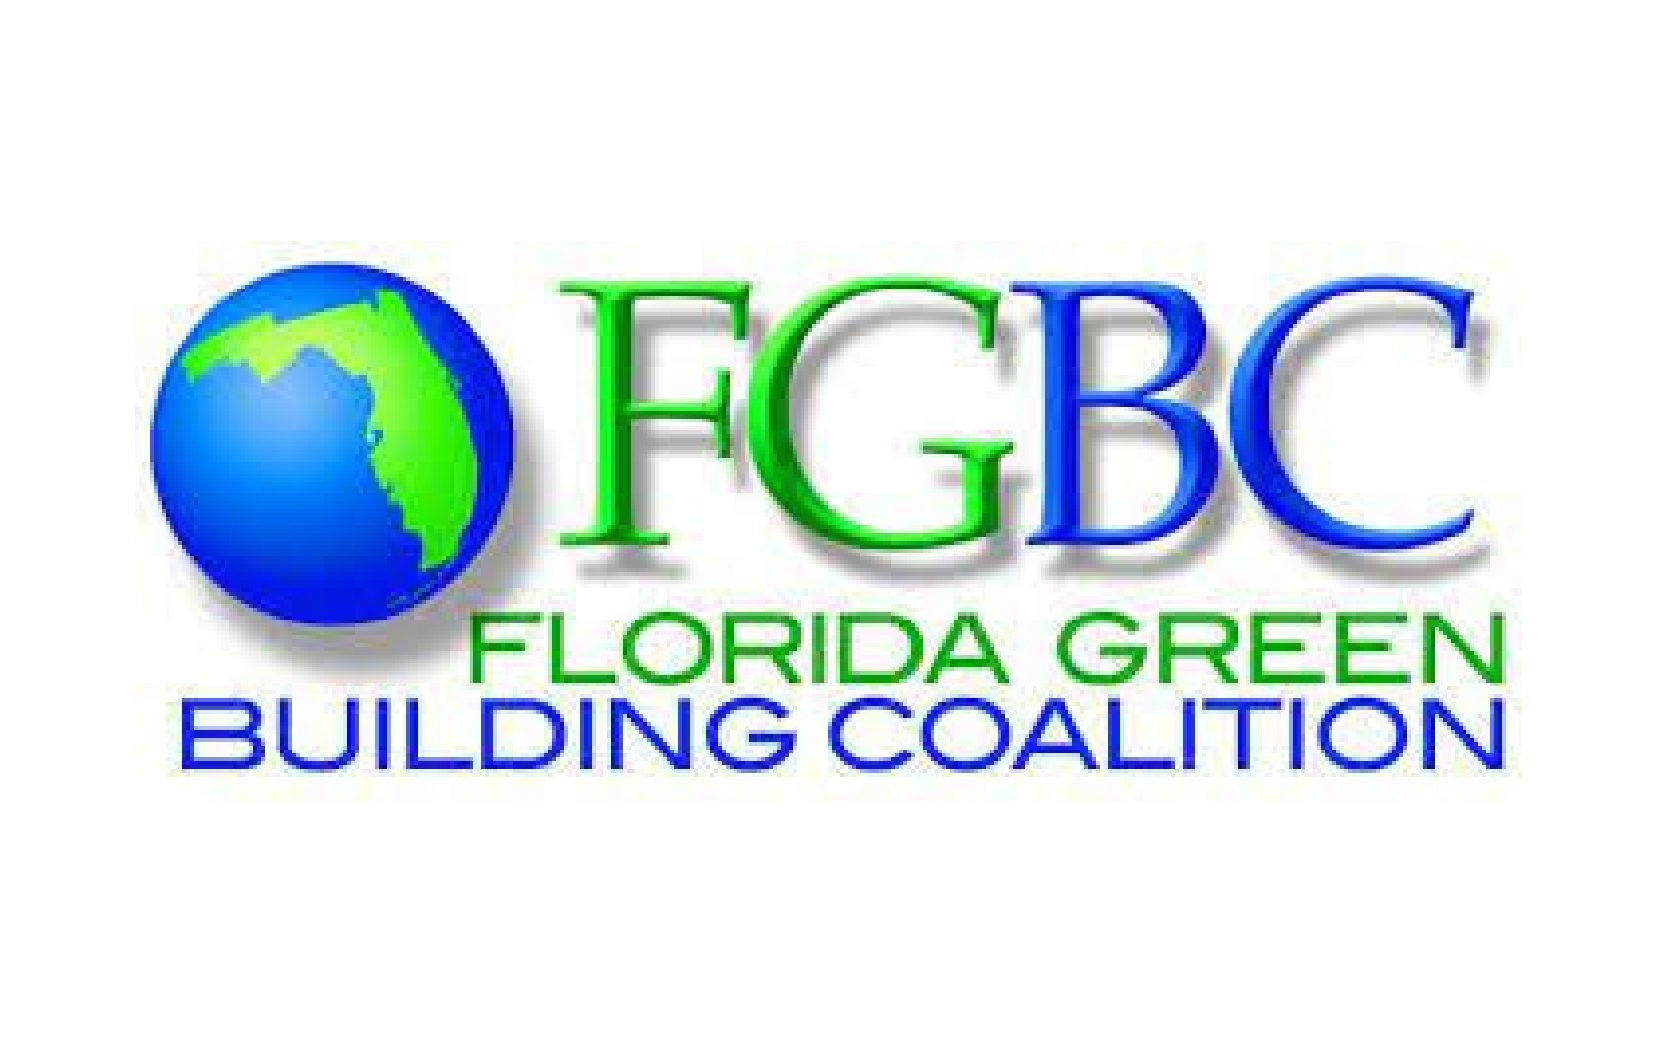 Florida Home Builders Association